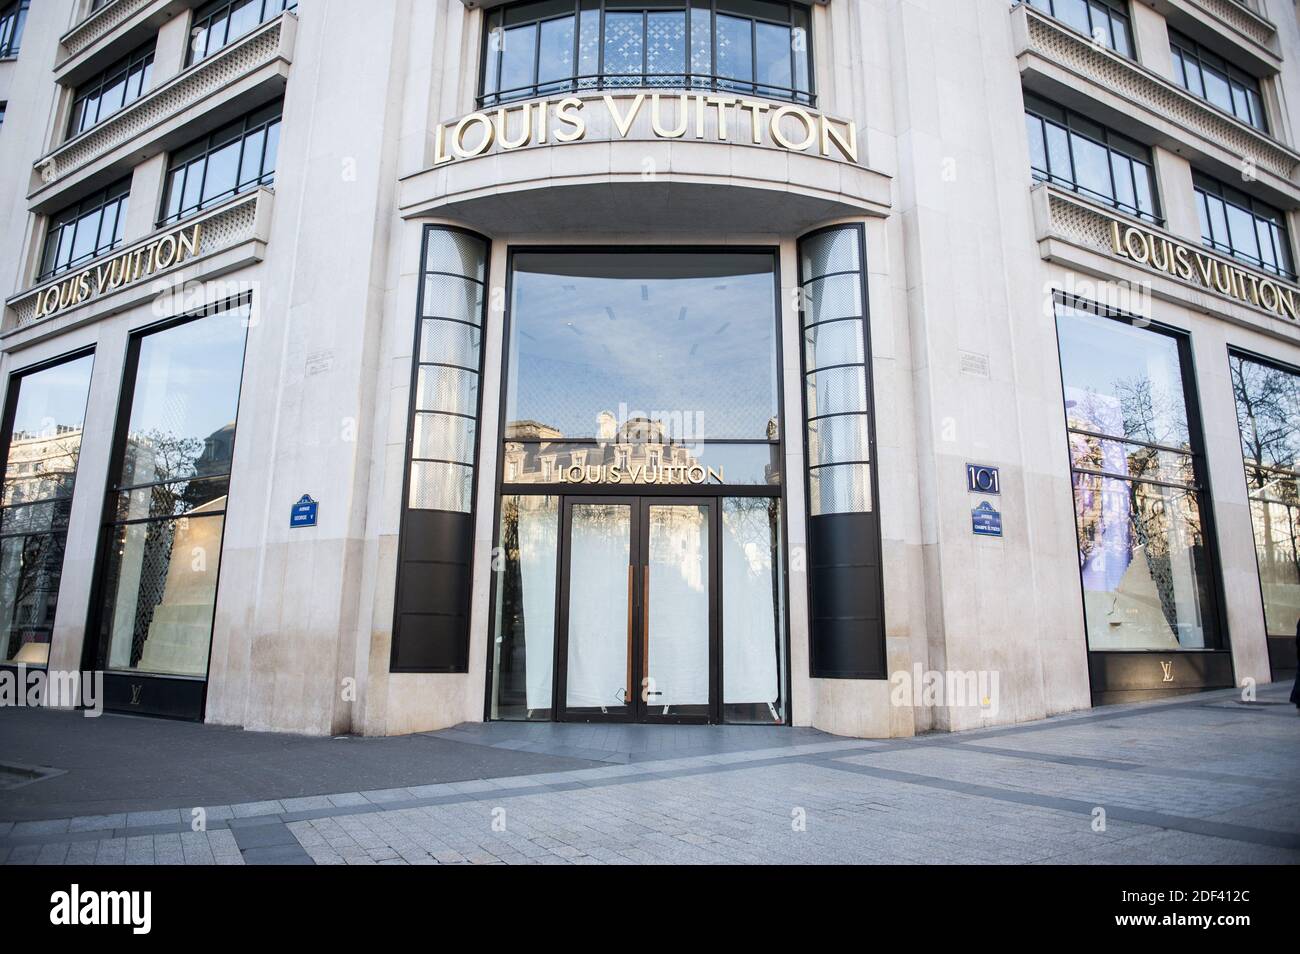 Louis Vuitton Paris Champs Ã‰lysÃ©es Editorial Stock Photo - Image of  france, store: 74043478